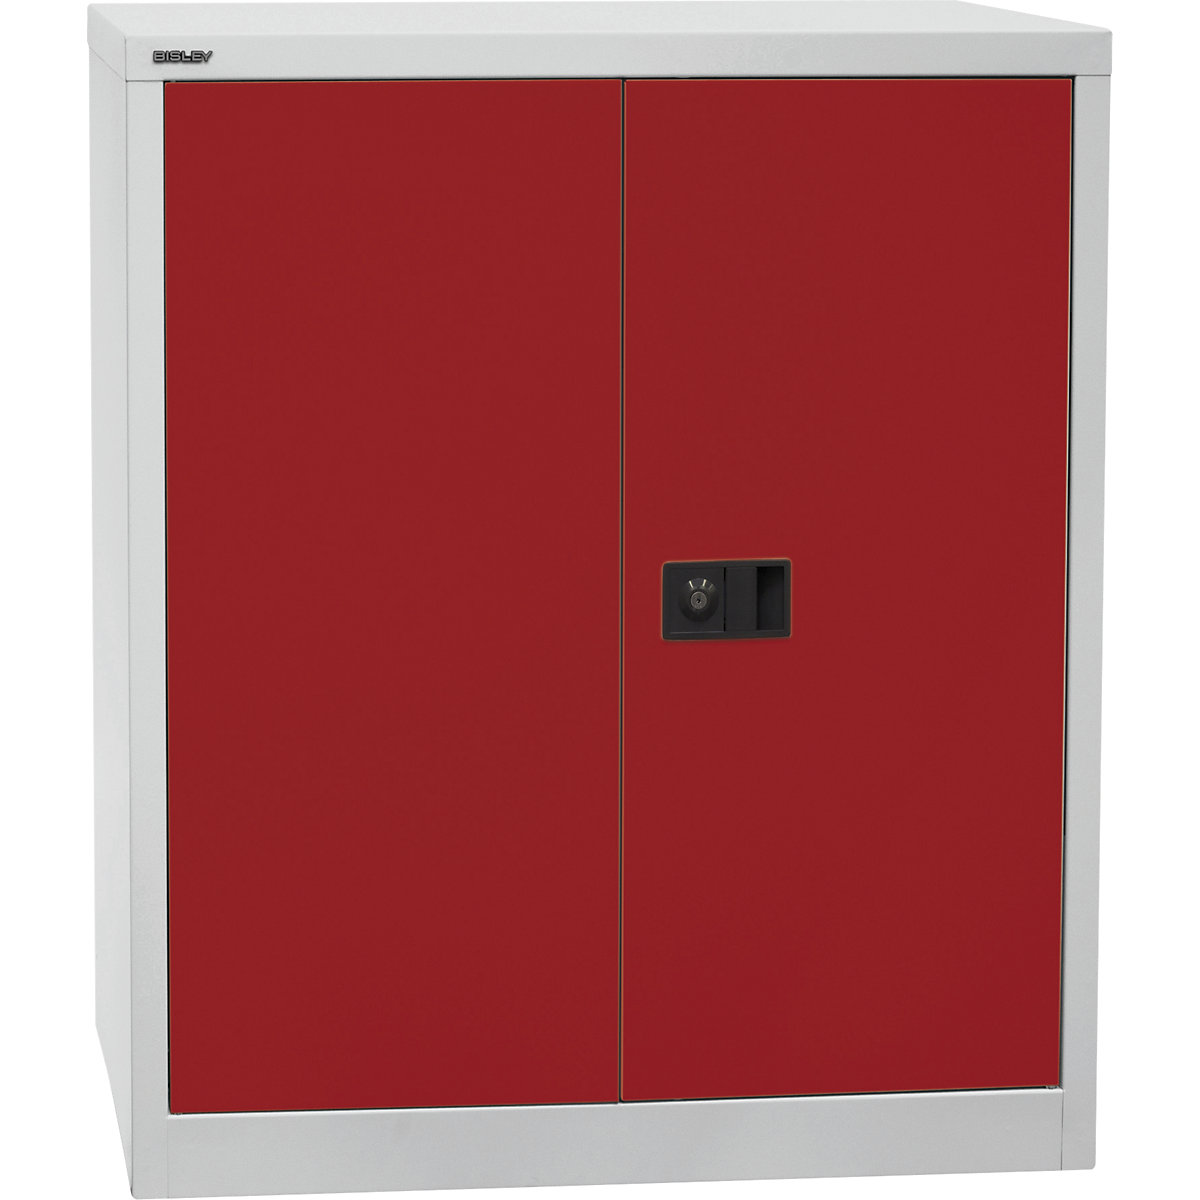 UNIVERSAL skriňa s krídlovými dverami – BISLEY, v x š x h 1000 x 914 x 400 mm, 1 polica, 2 výšky zakladačov, svetlošedá / kardinálska červená-7